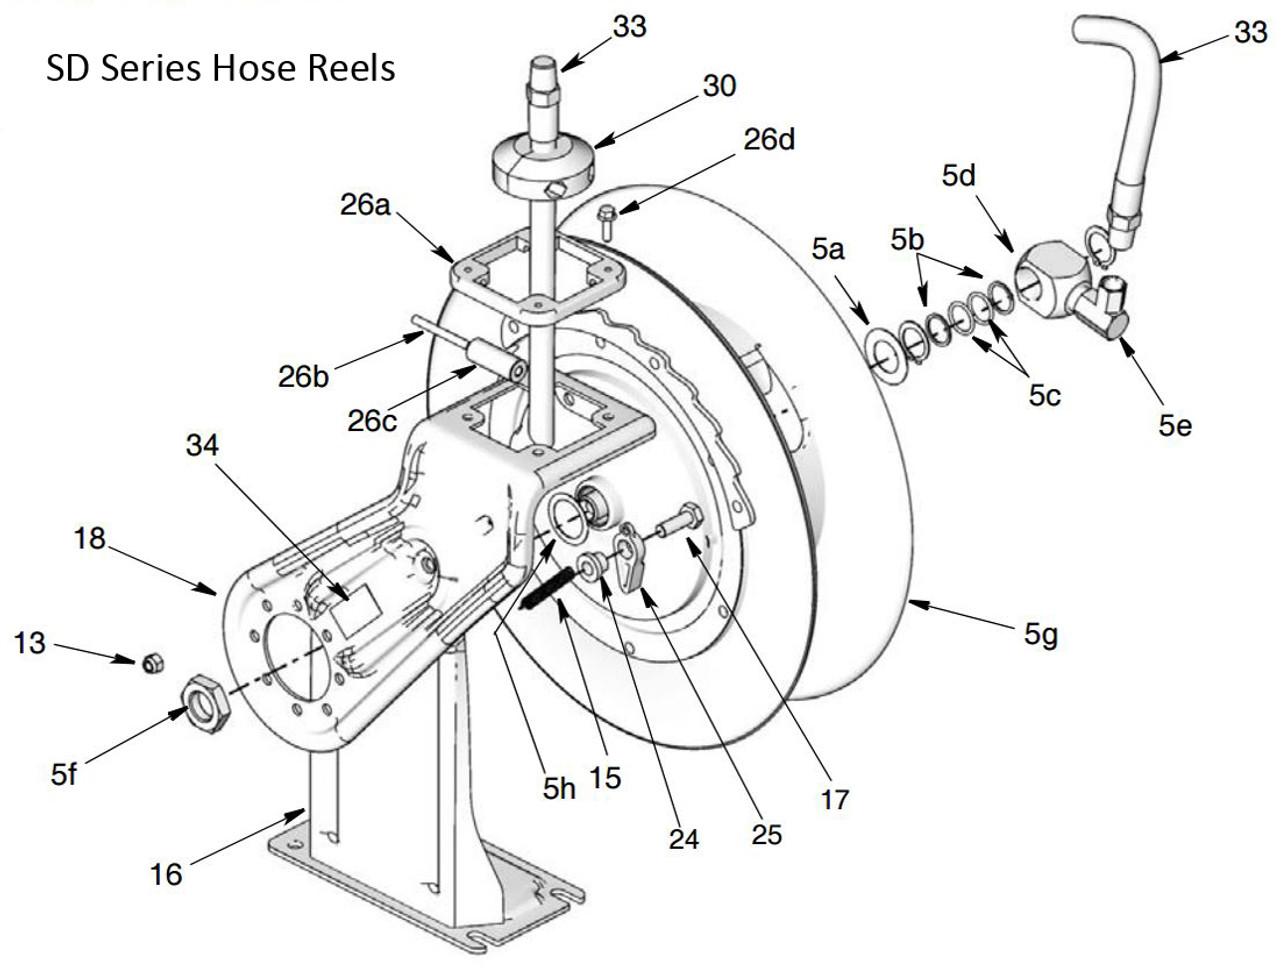 Graco SD Series Air/Water Hose Reel Spool Repair Kits For HPL25B & HPL25D